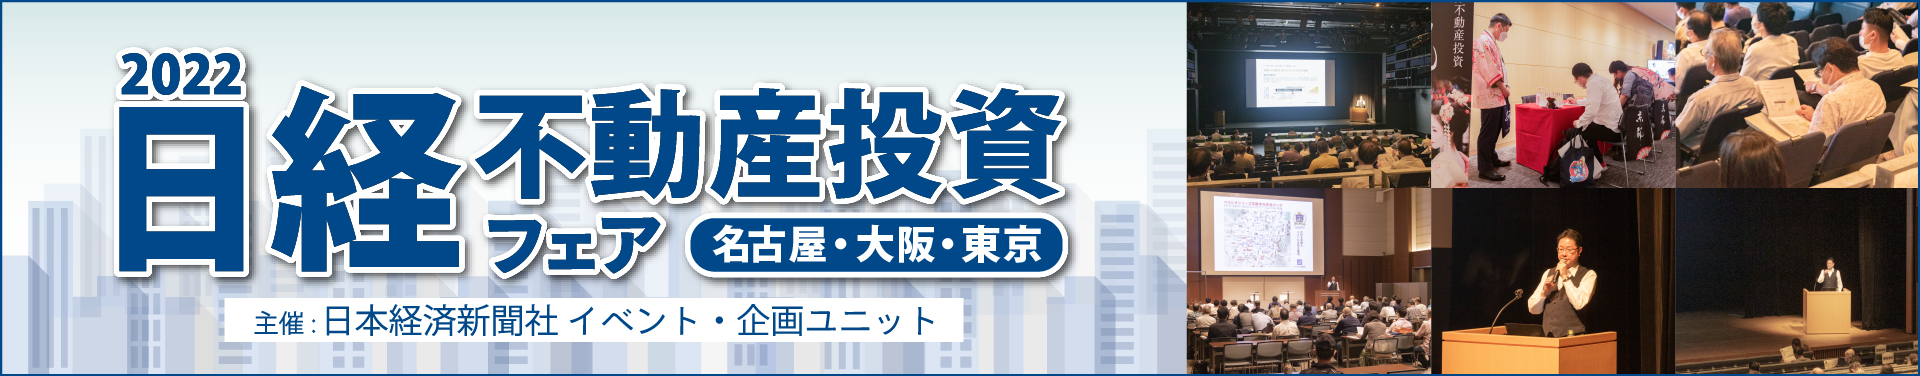 日経不動産投資フェア2022【大阪・名古屋・東京開催】　イベントレポート